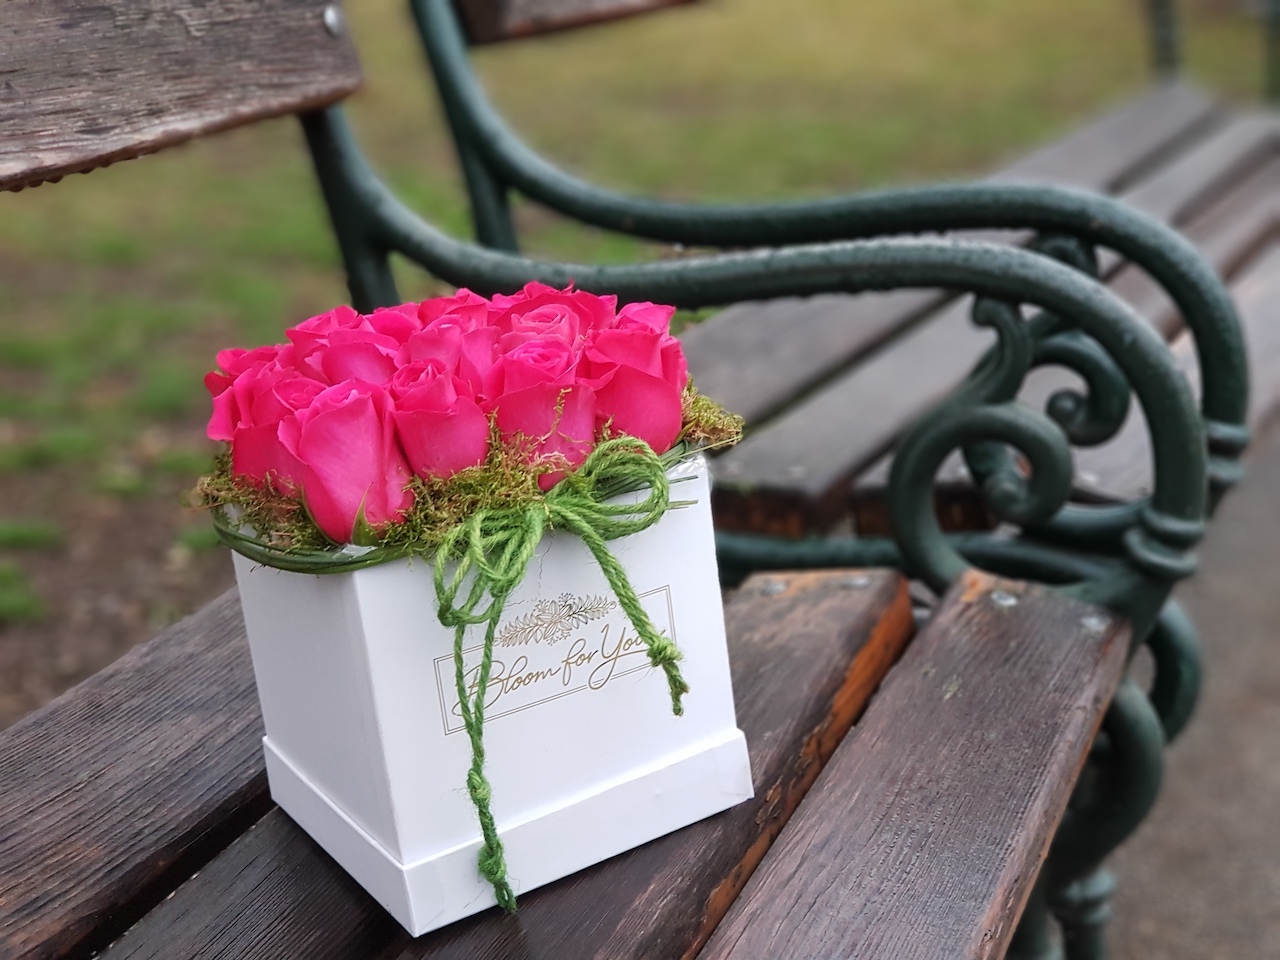 Blumen(Flower)box #2 -Verfügbarkeit anfragen (request availability)